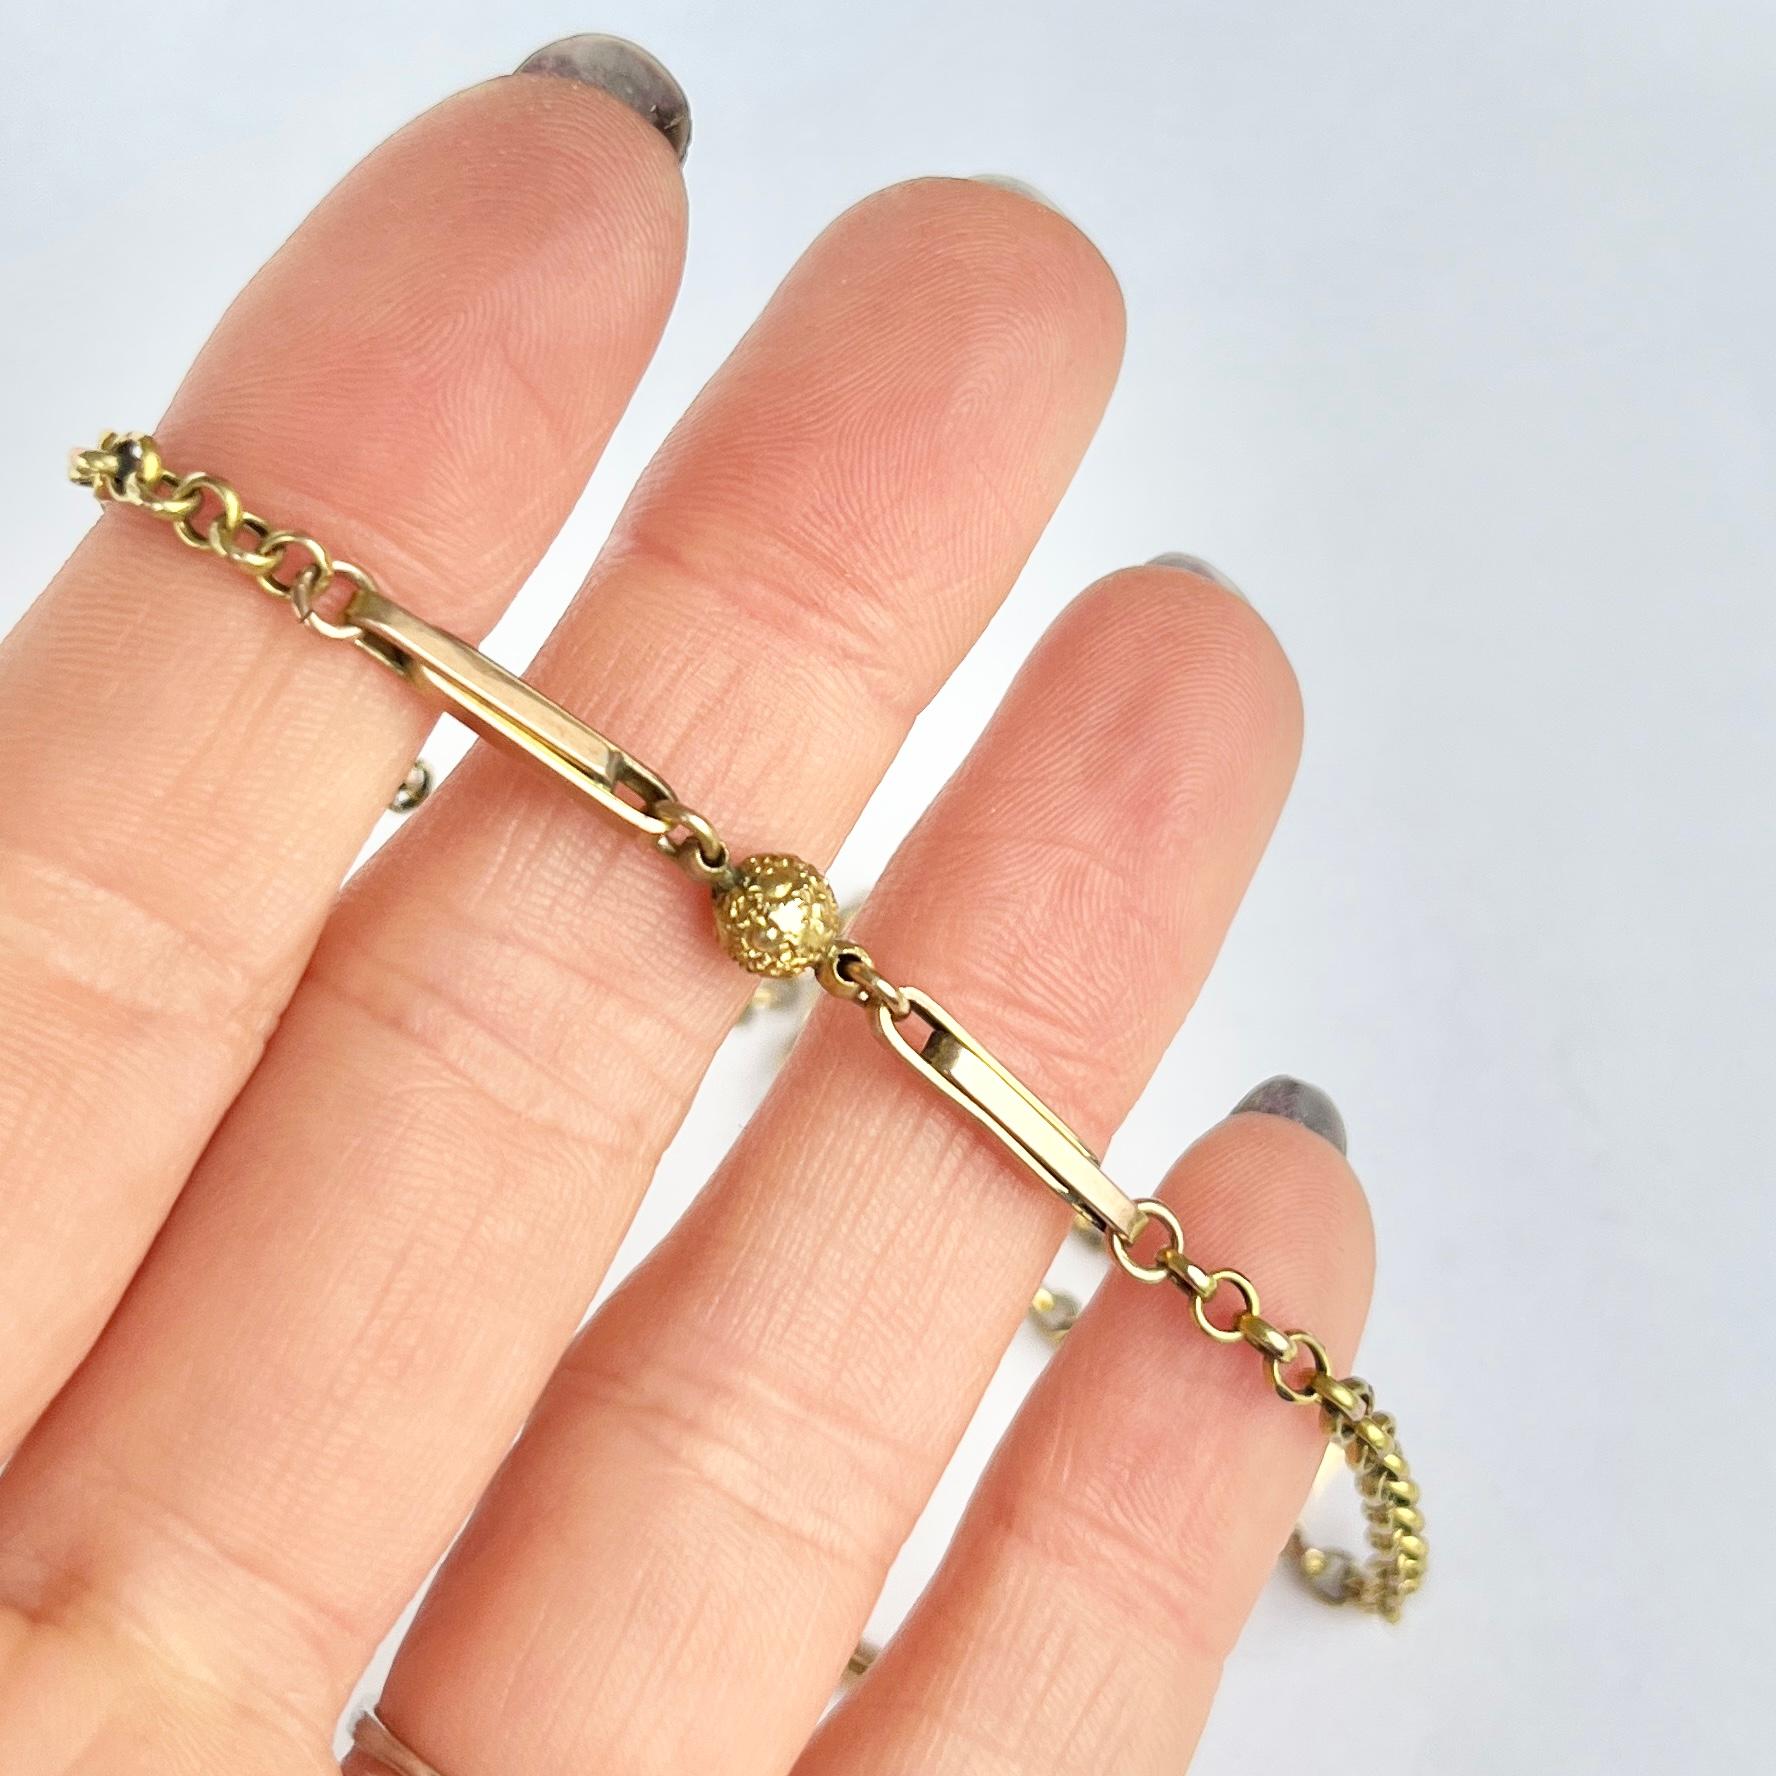 Ce collier en or jaune 9ct est composé de minces maillons ovales et d'orbes en or aux détails complexes. La chaîne se ferme à l'aide d'un fermoir en forme de tonneau et offre une sensation délicate et élégante. 

Longueur : 41,5 cm 
Largeur : 2mm